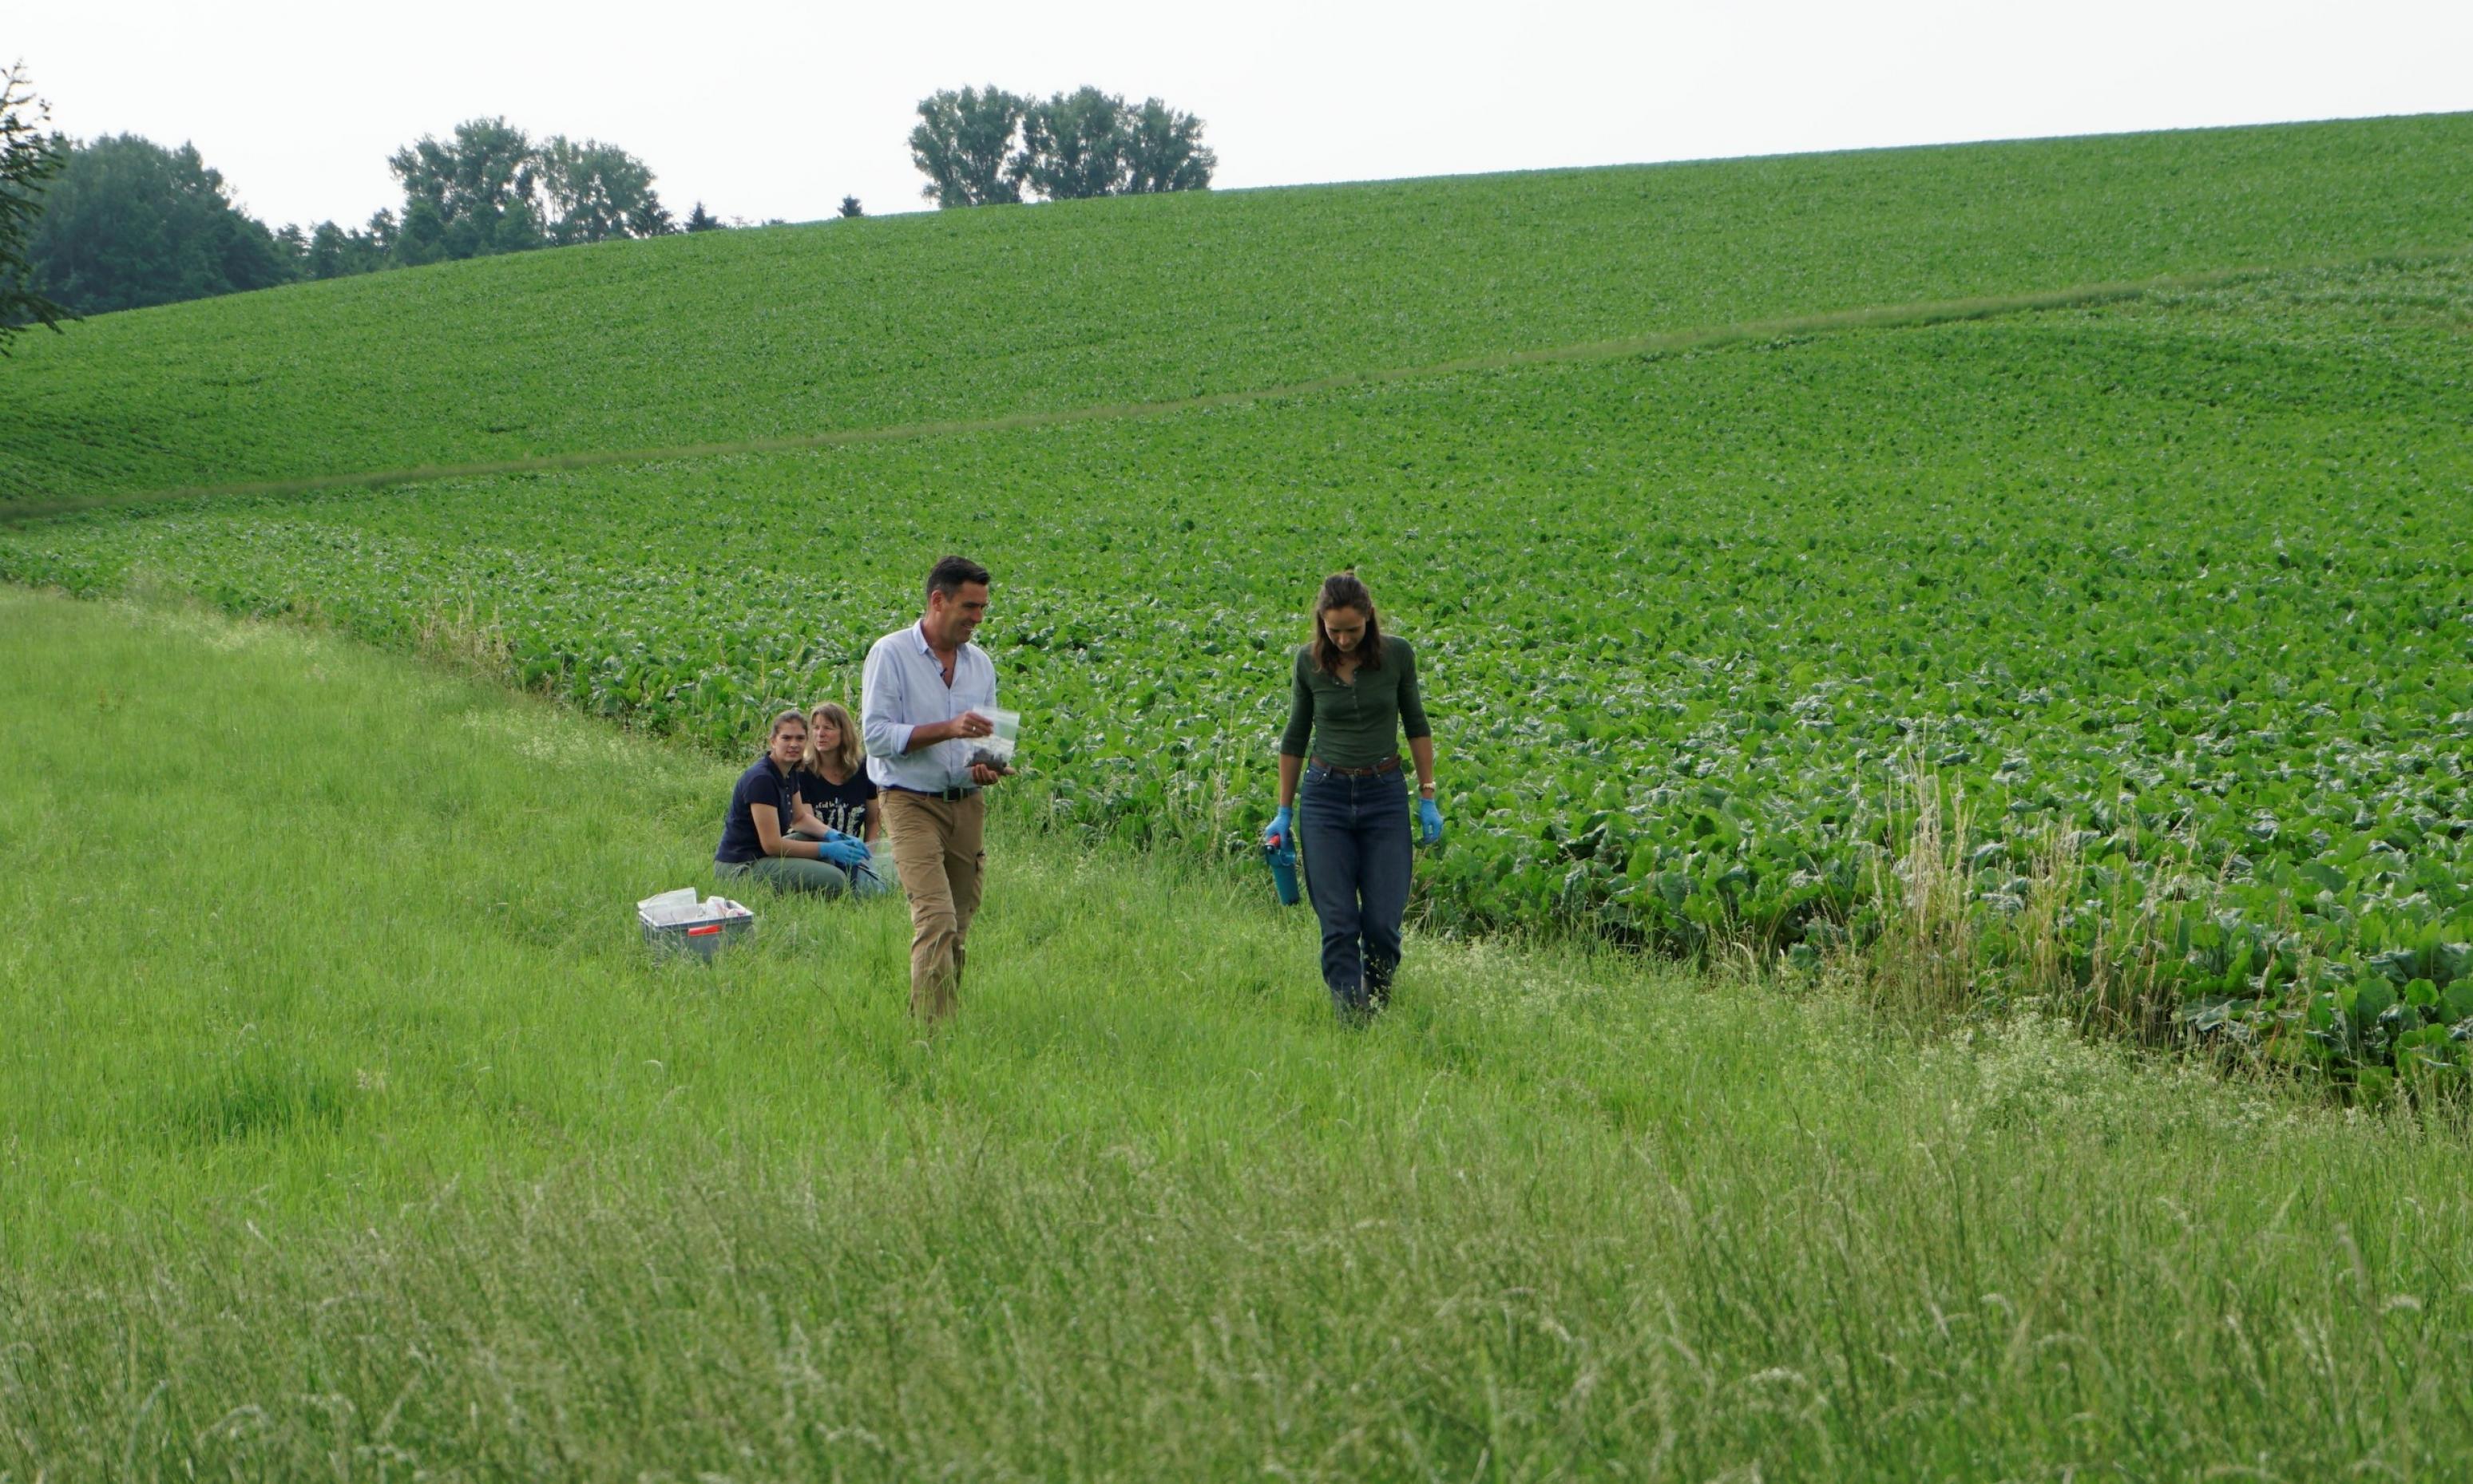 Brühl und Mitarbeiterinnen auf einer Wiese am Rand eines Felds.